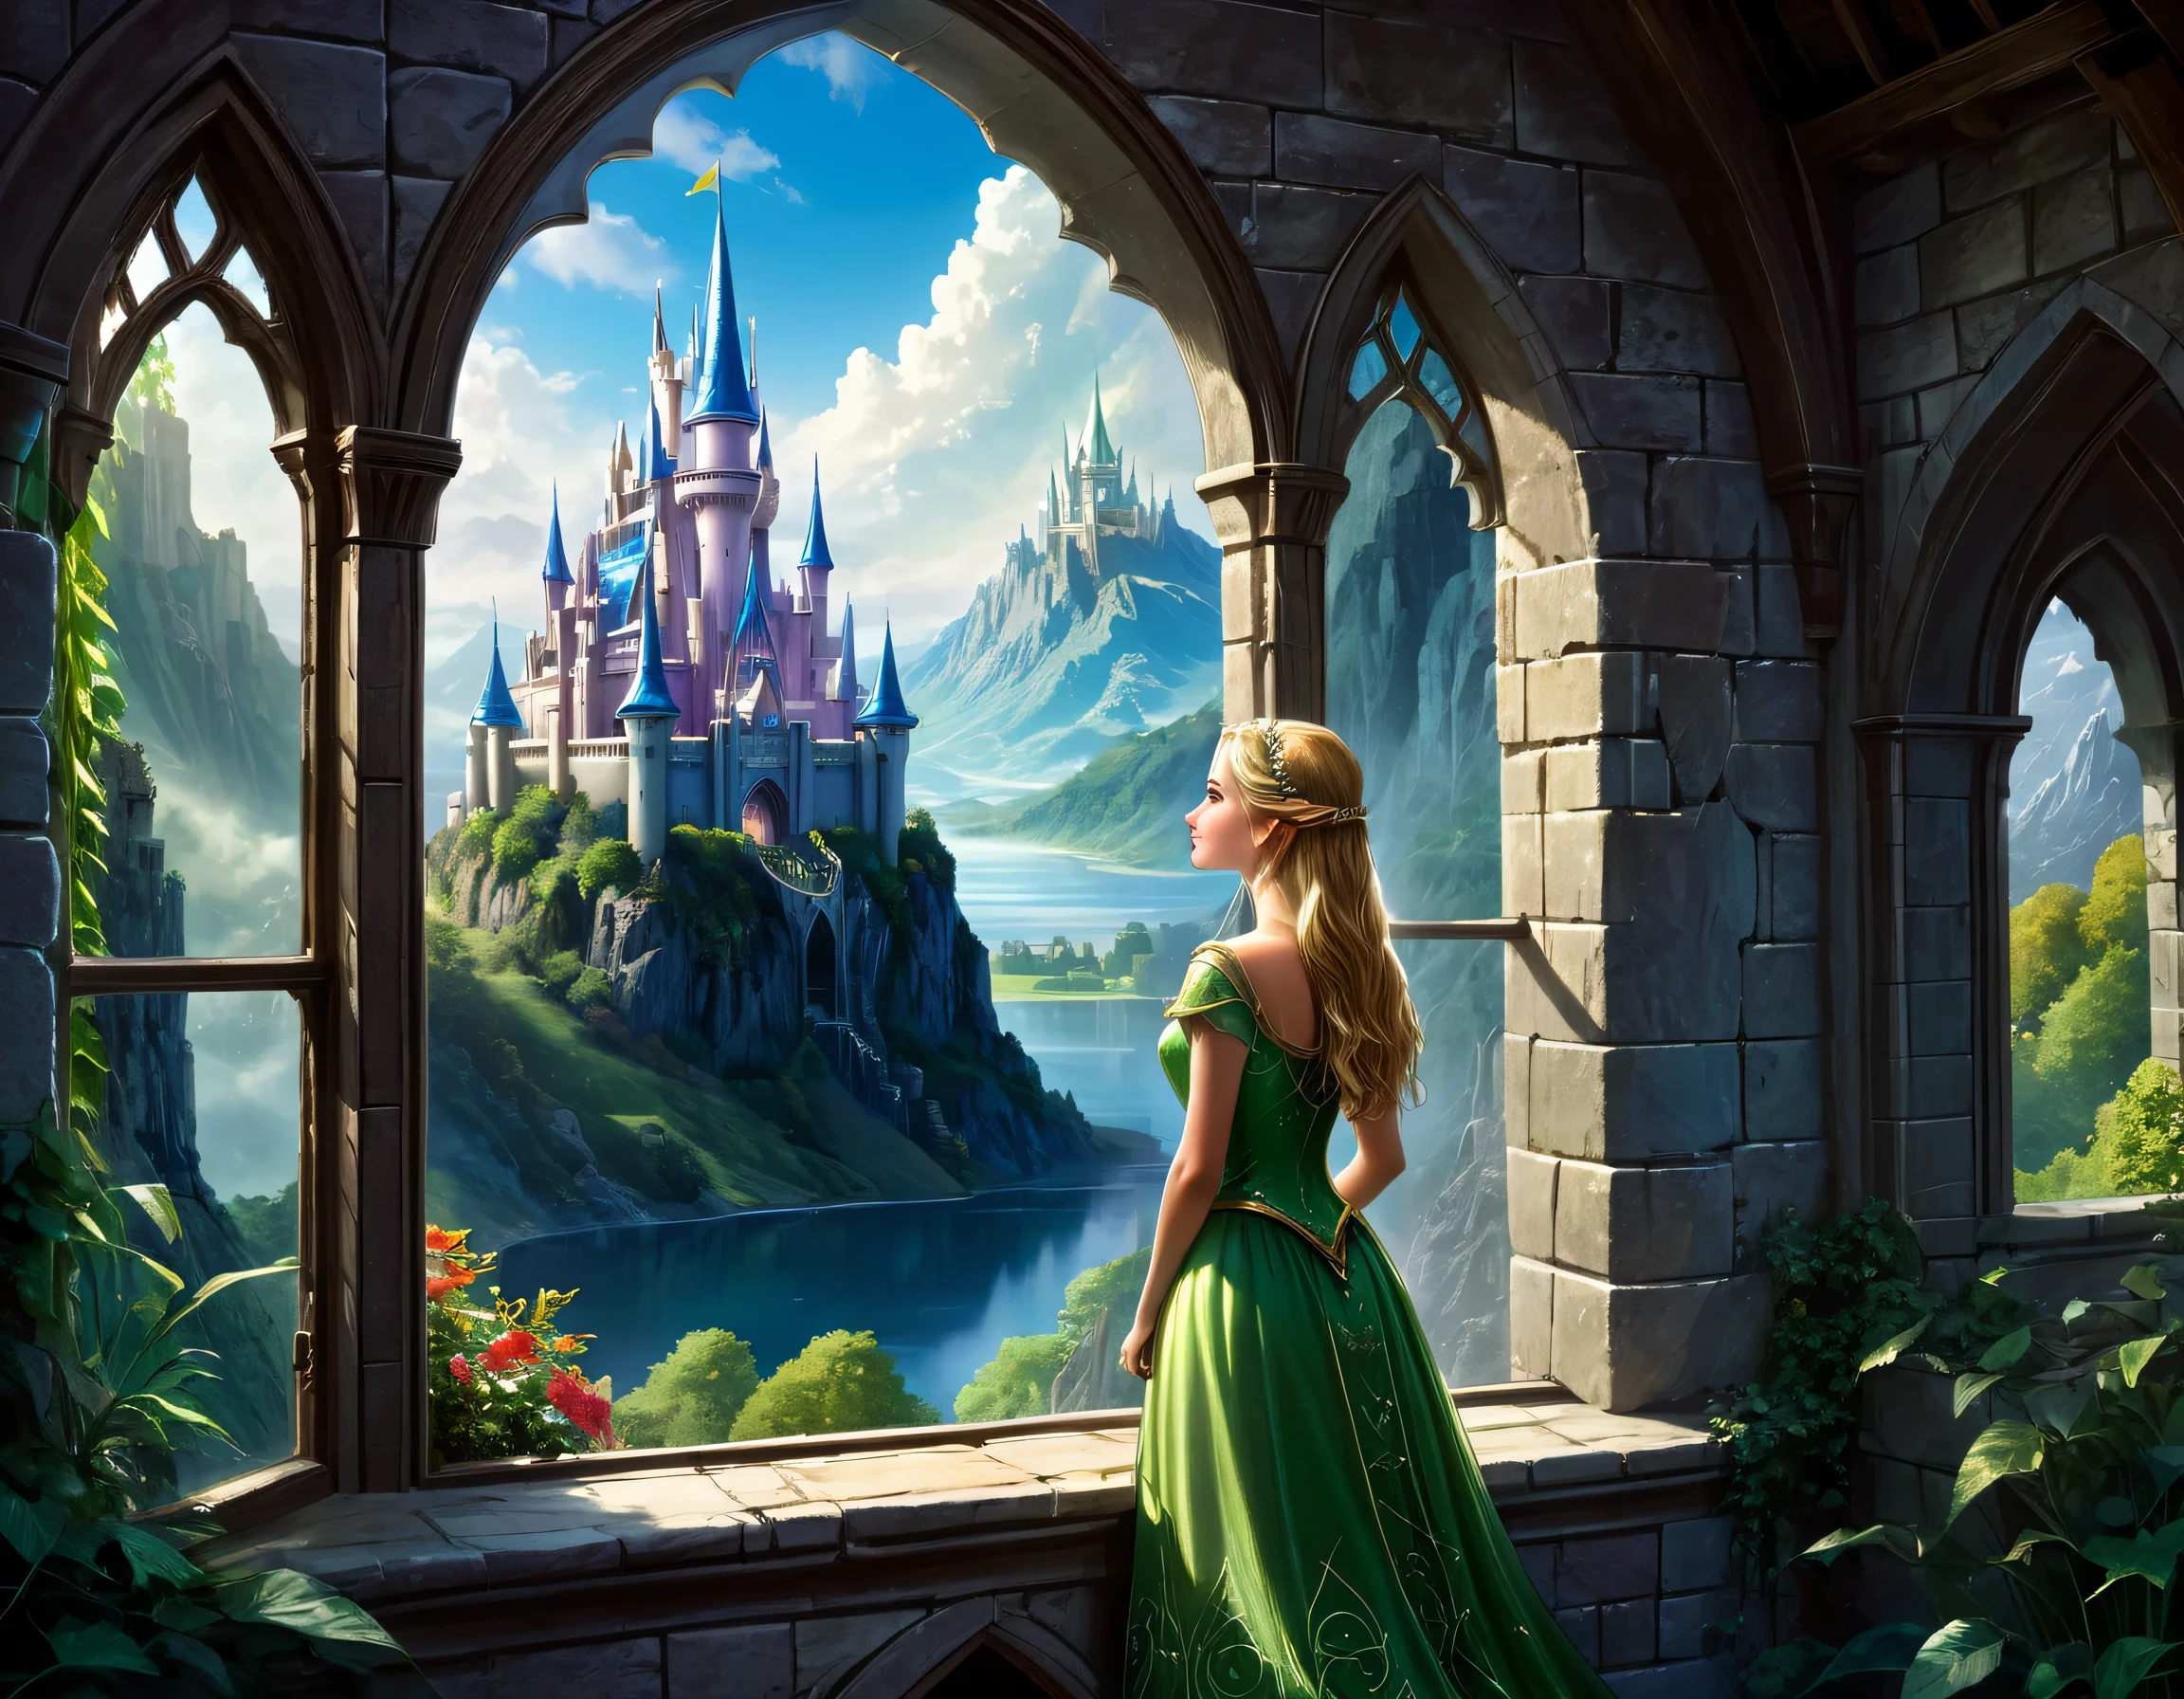 arte de fantasia, Arte RPG, uma princesa olhando pela janela para um castelo mágico, uma linda princesa élfica olhando pela janela para ver um castelo mágico, um impressionante castelo mais detalhado, com torres, pontes, um fosso, em pé no topo de uma montanha coloridaglazecd_Xl